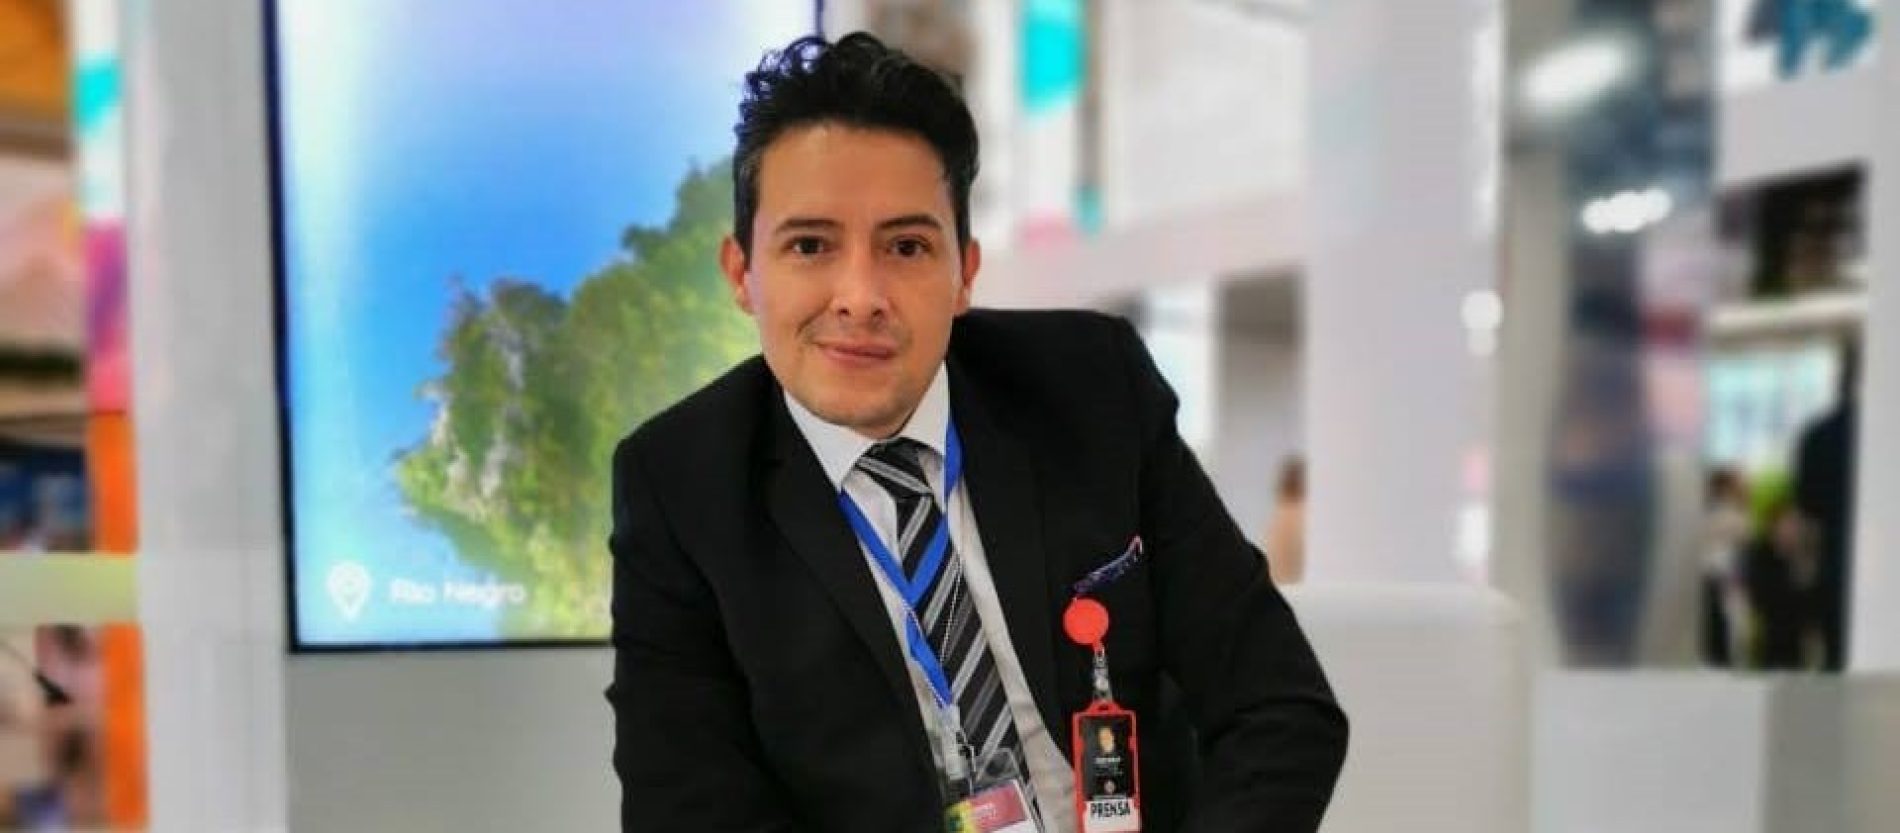 John Mikan: 25 años ejerciendo RRPP y comunicación en Colombia